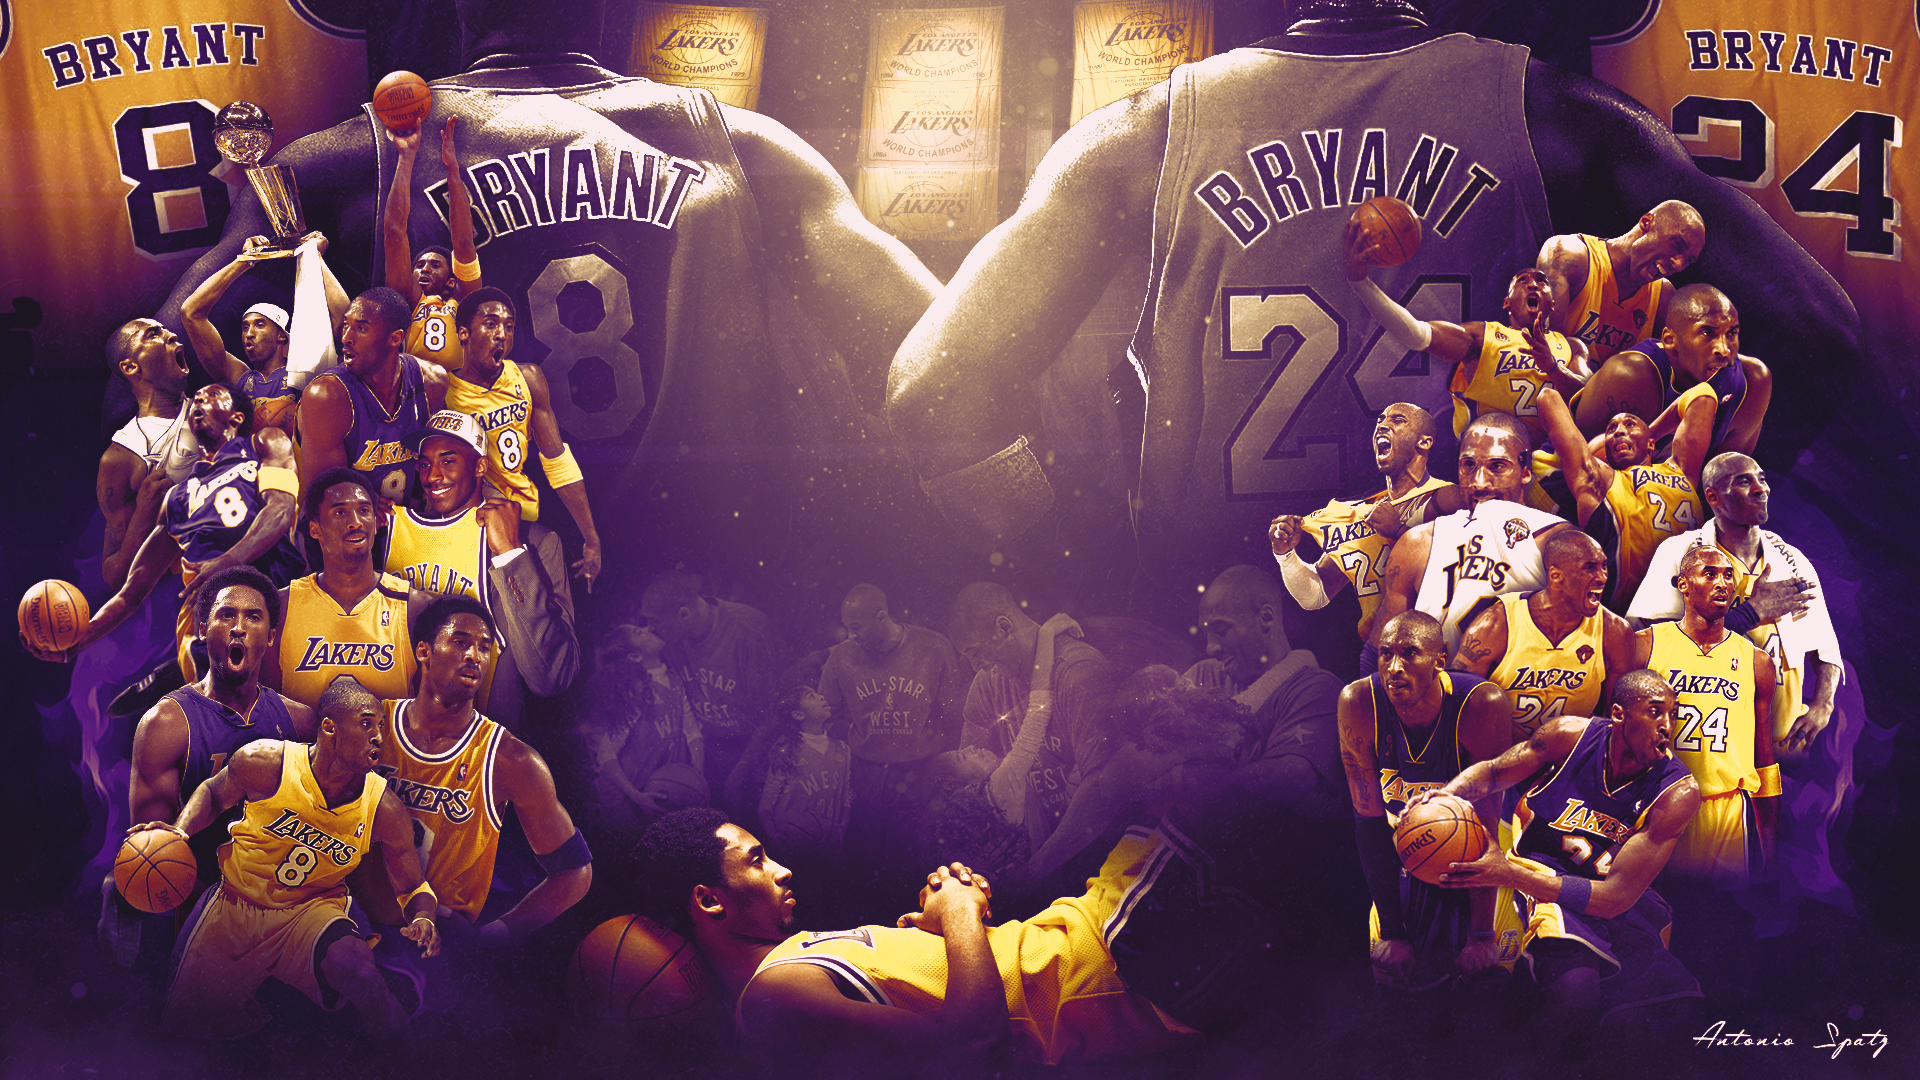 Một bức hình nền tuyệt đẹp của siêu sao bóng rổ Kobe Bryant sẽ khiến bạn cảm thấy phấn khích và đầy cảm hứng cho ngày mới. Hãy xem hình nền Kobe Bryant này để cảm nhận được sức mạnh và bản lĩnh của ngôi sao lừng danh này.